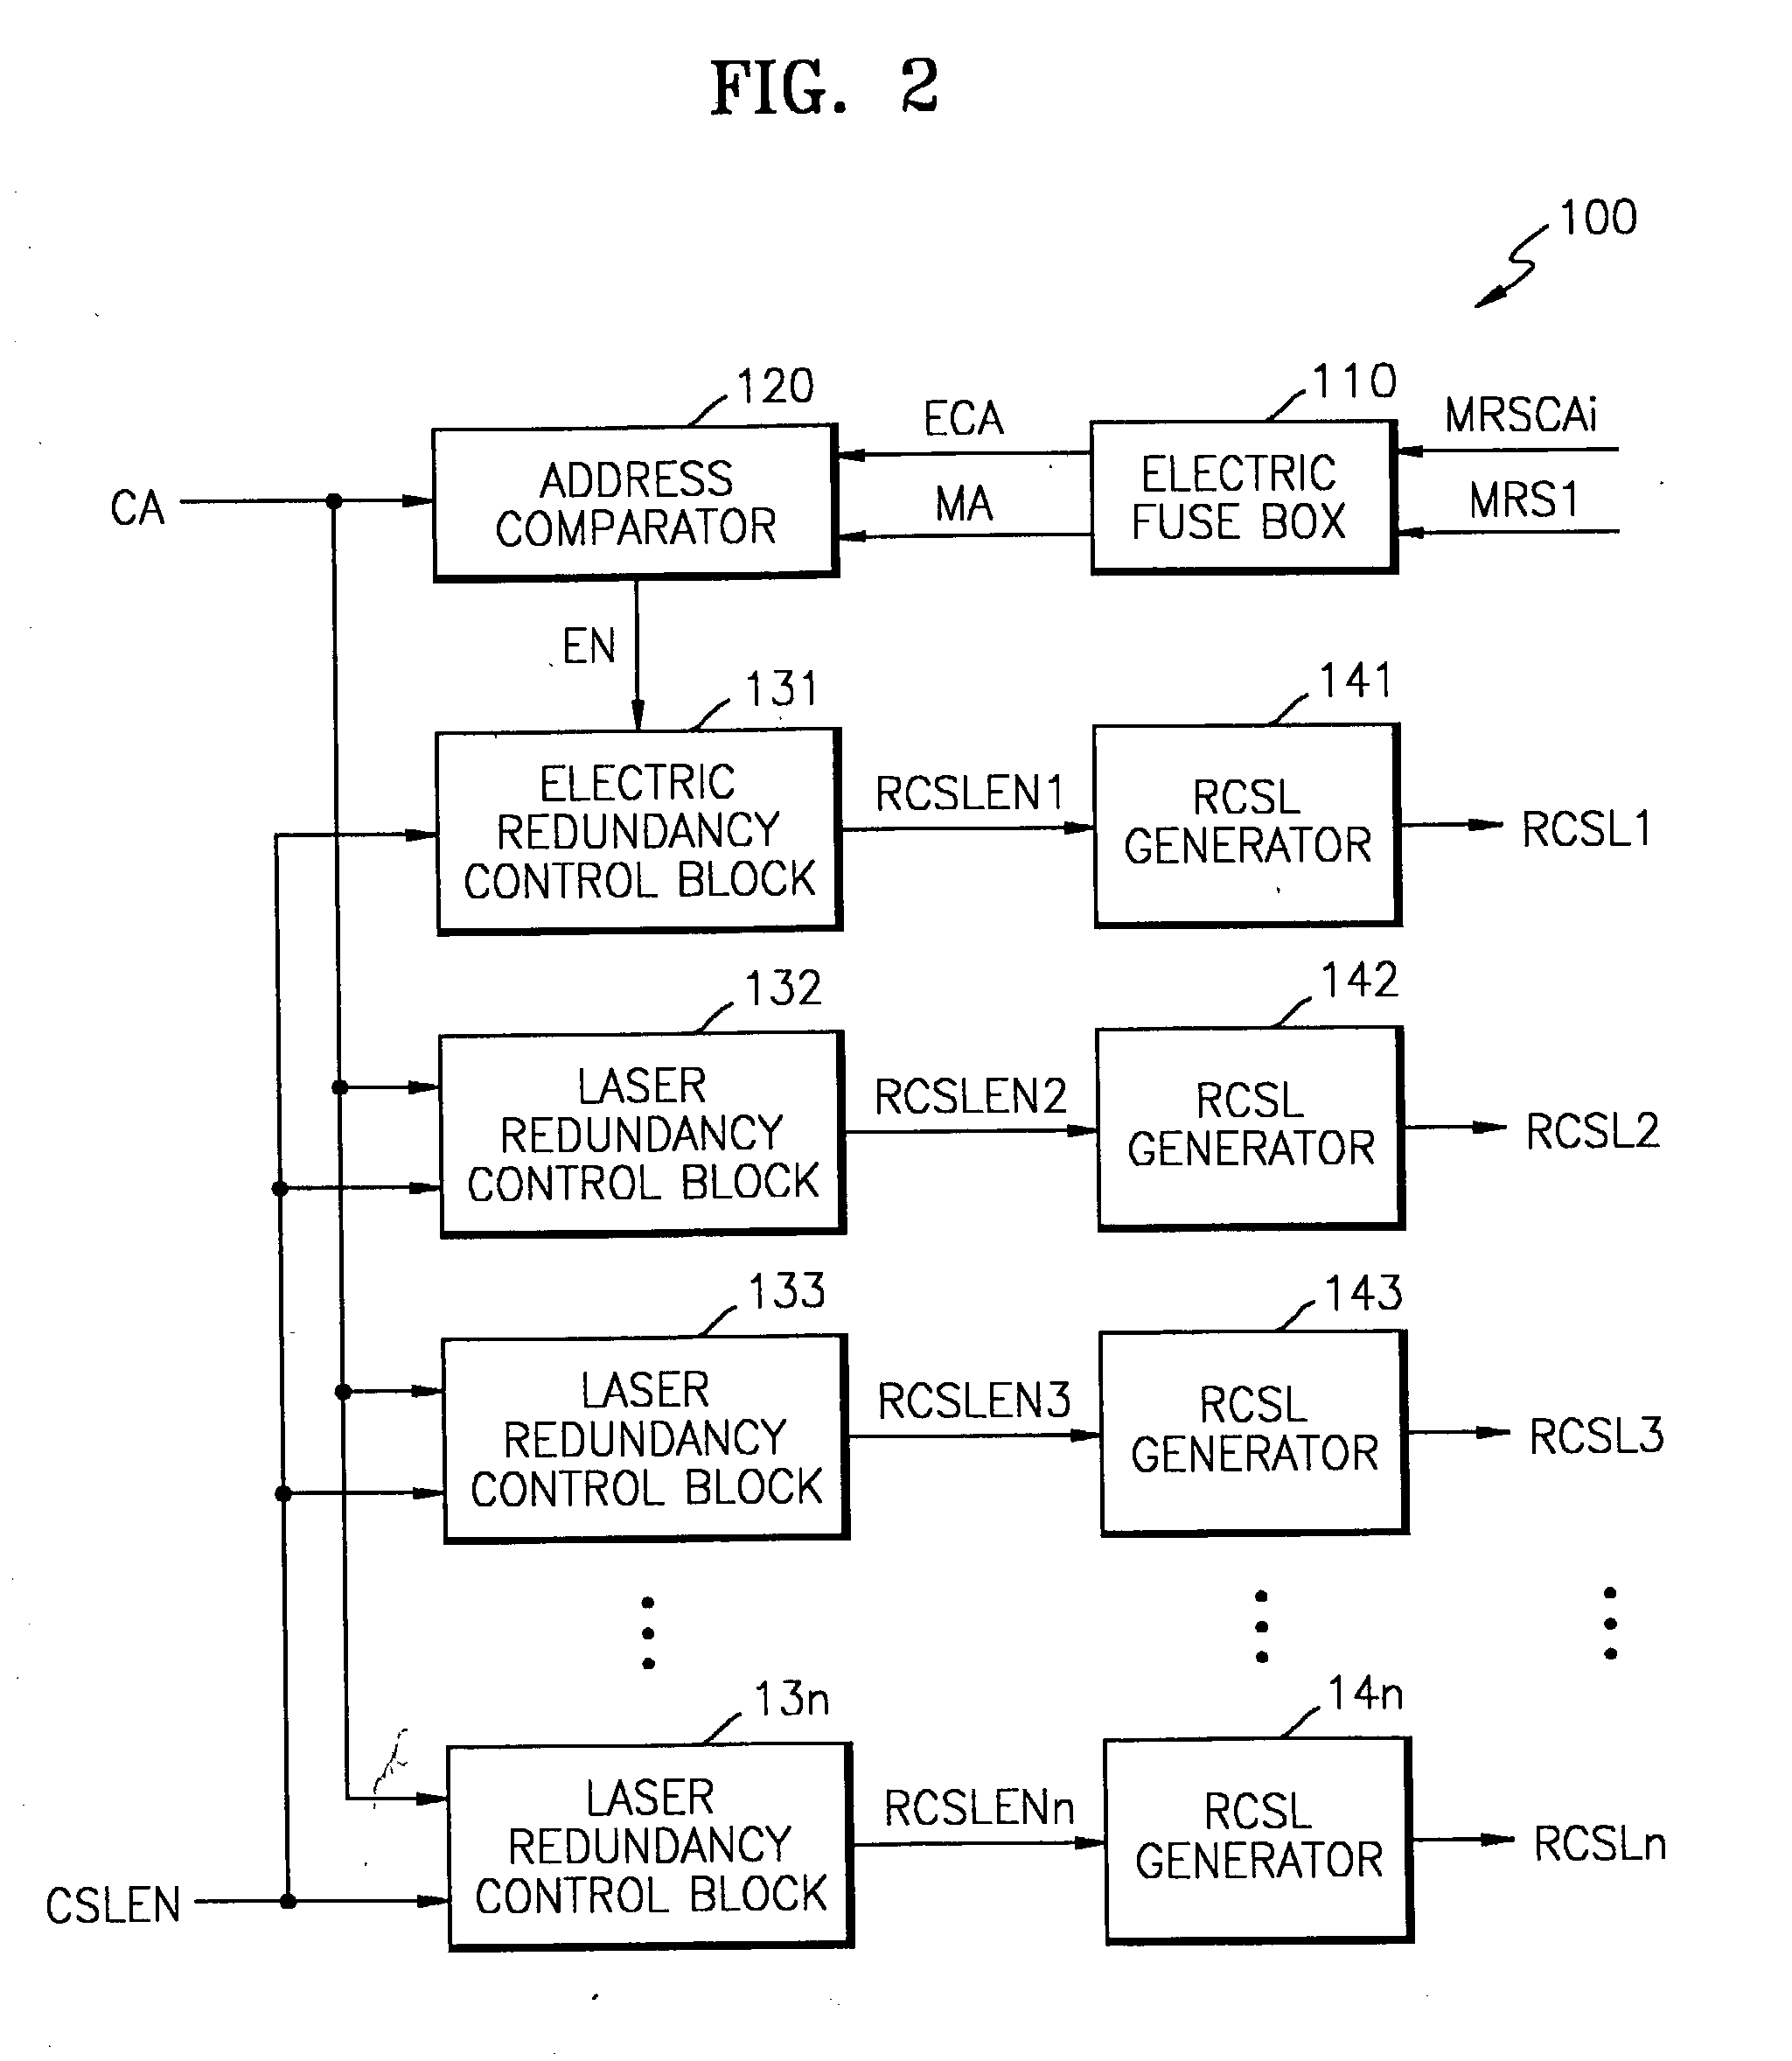 Semiconductor memory device post-repair circuit and method